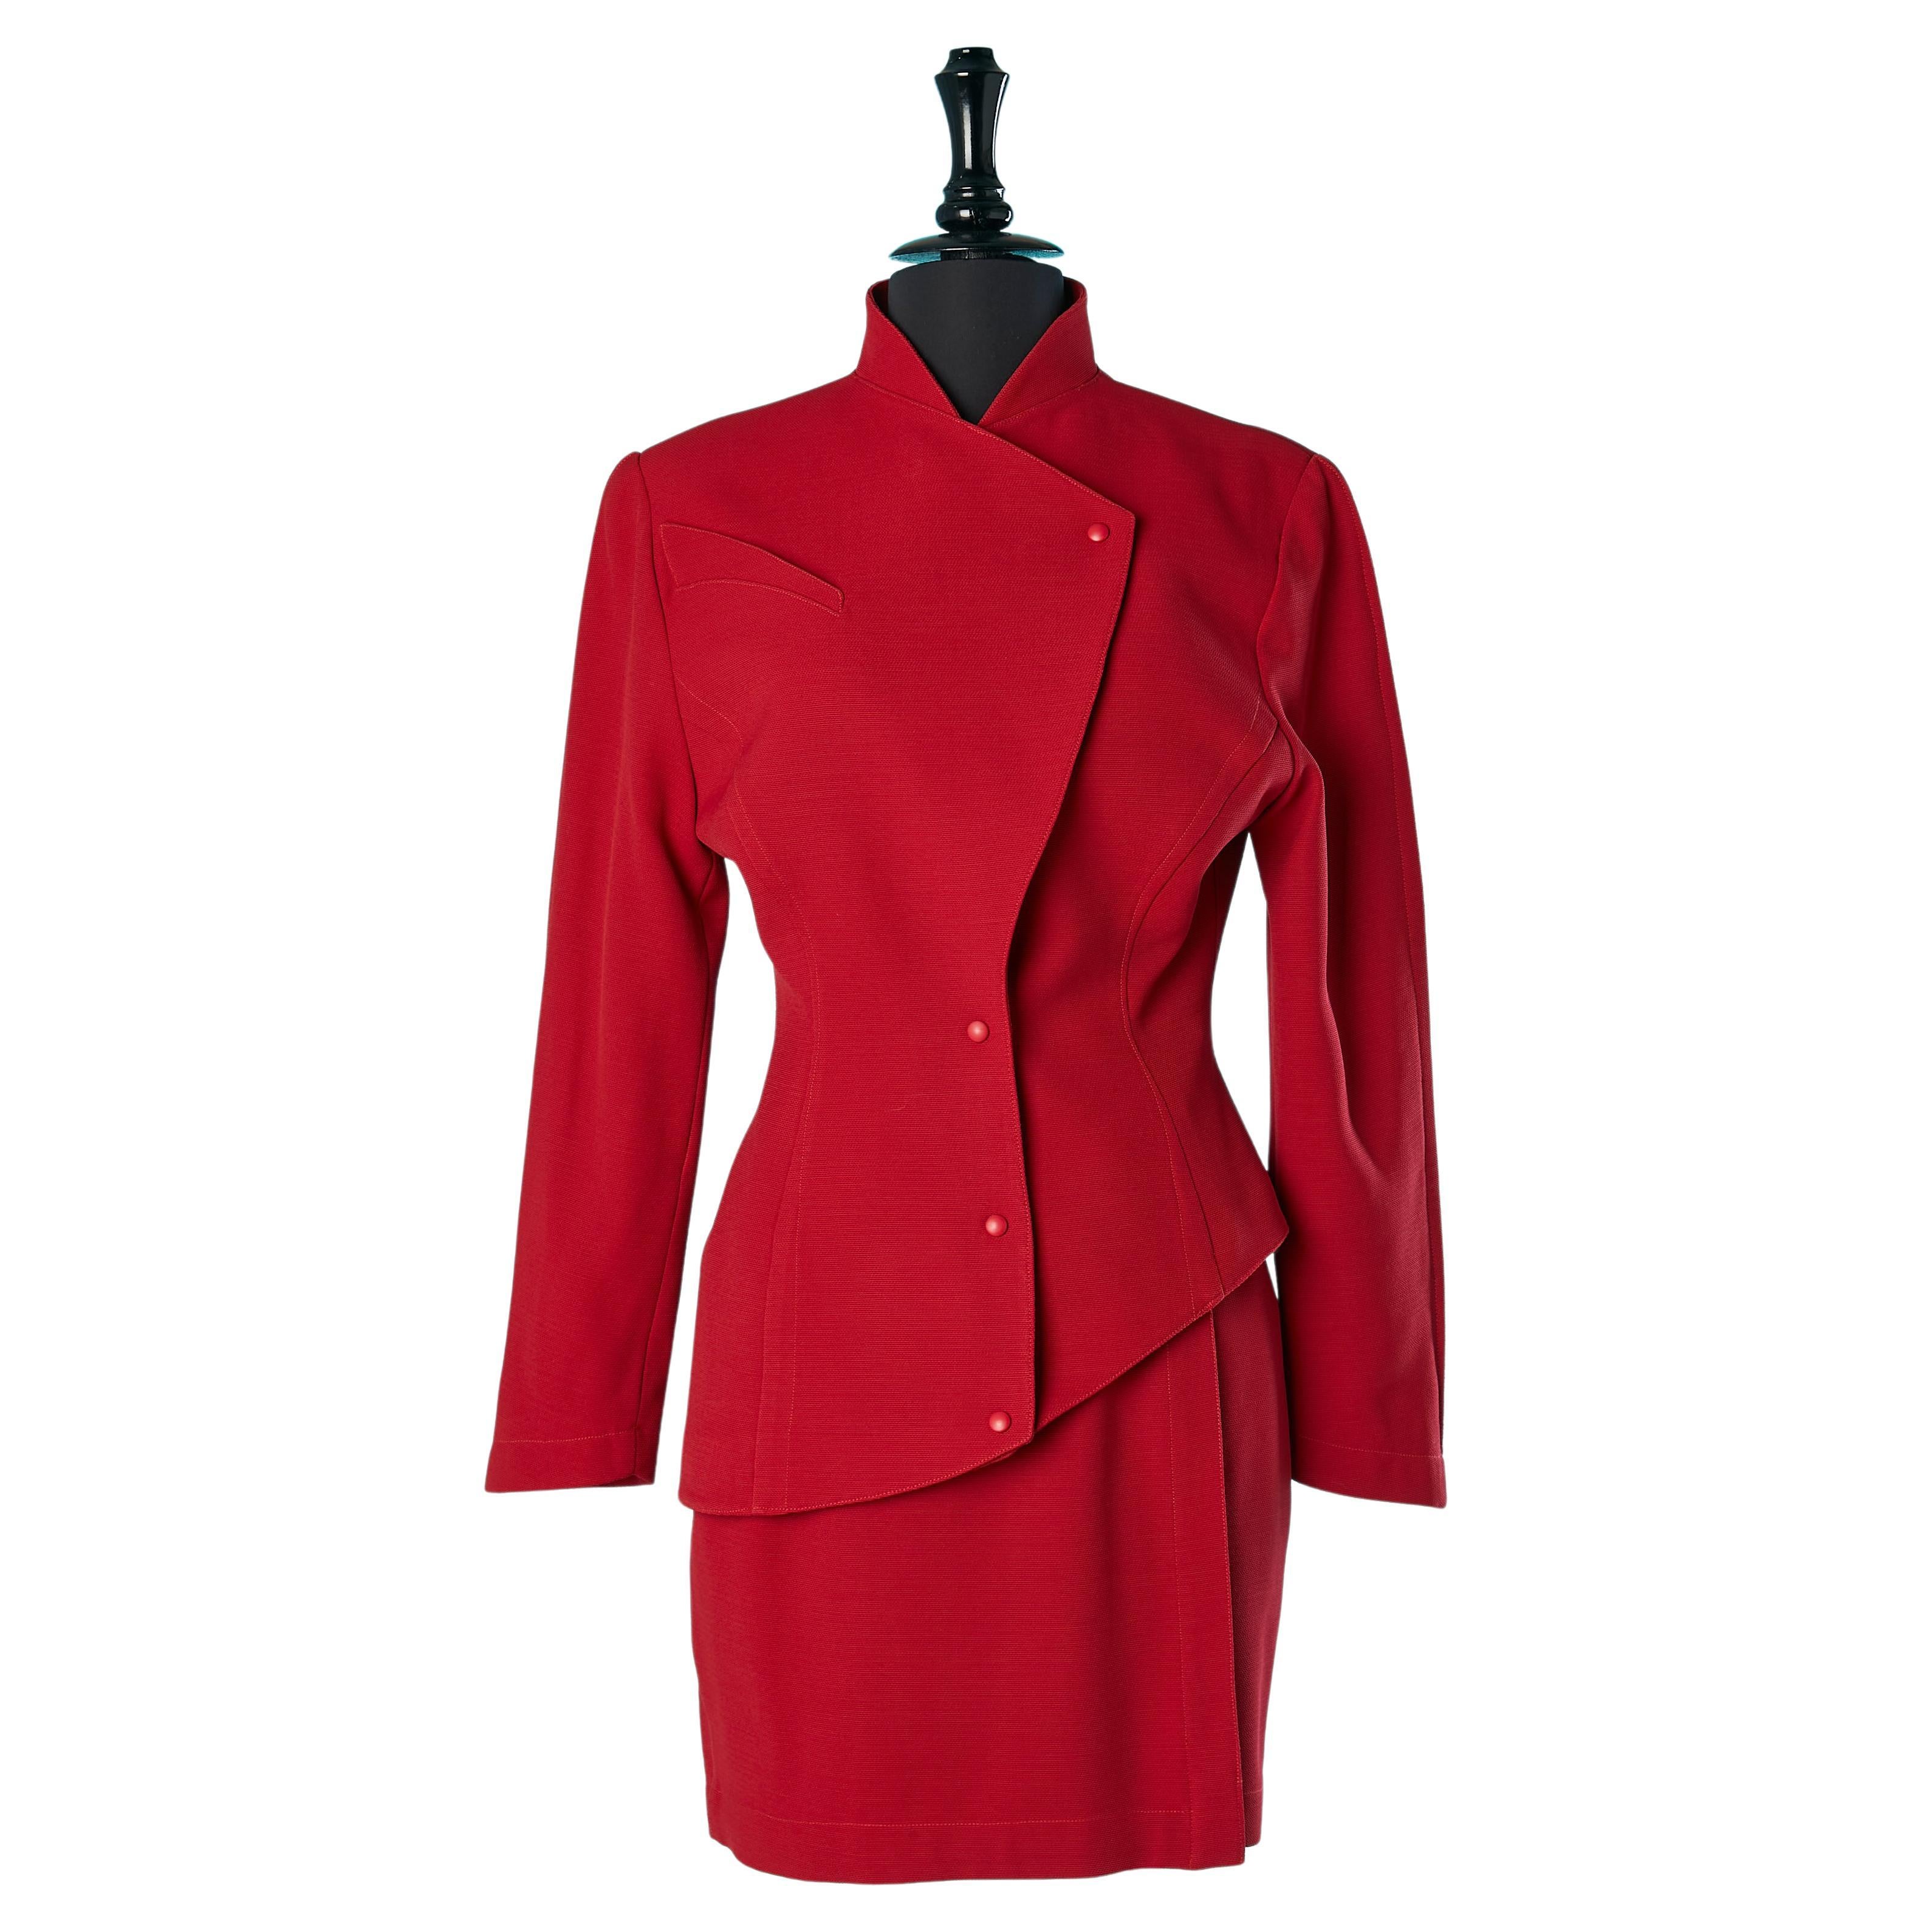 Traje-falda de lana roja con chaqueta asimétrica y falda envolvente Thierry Mugler 